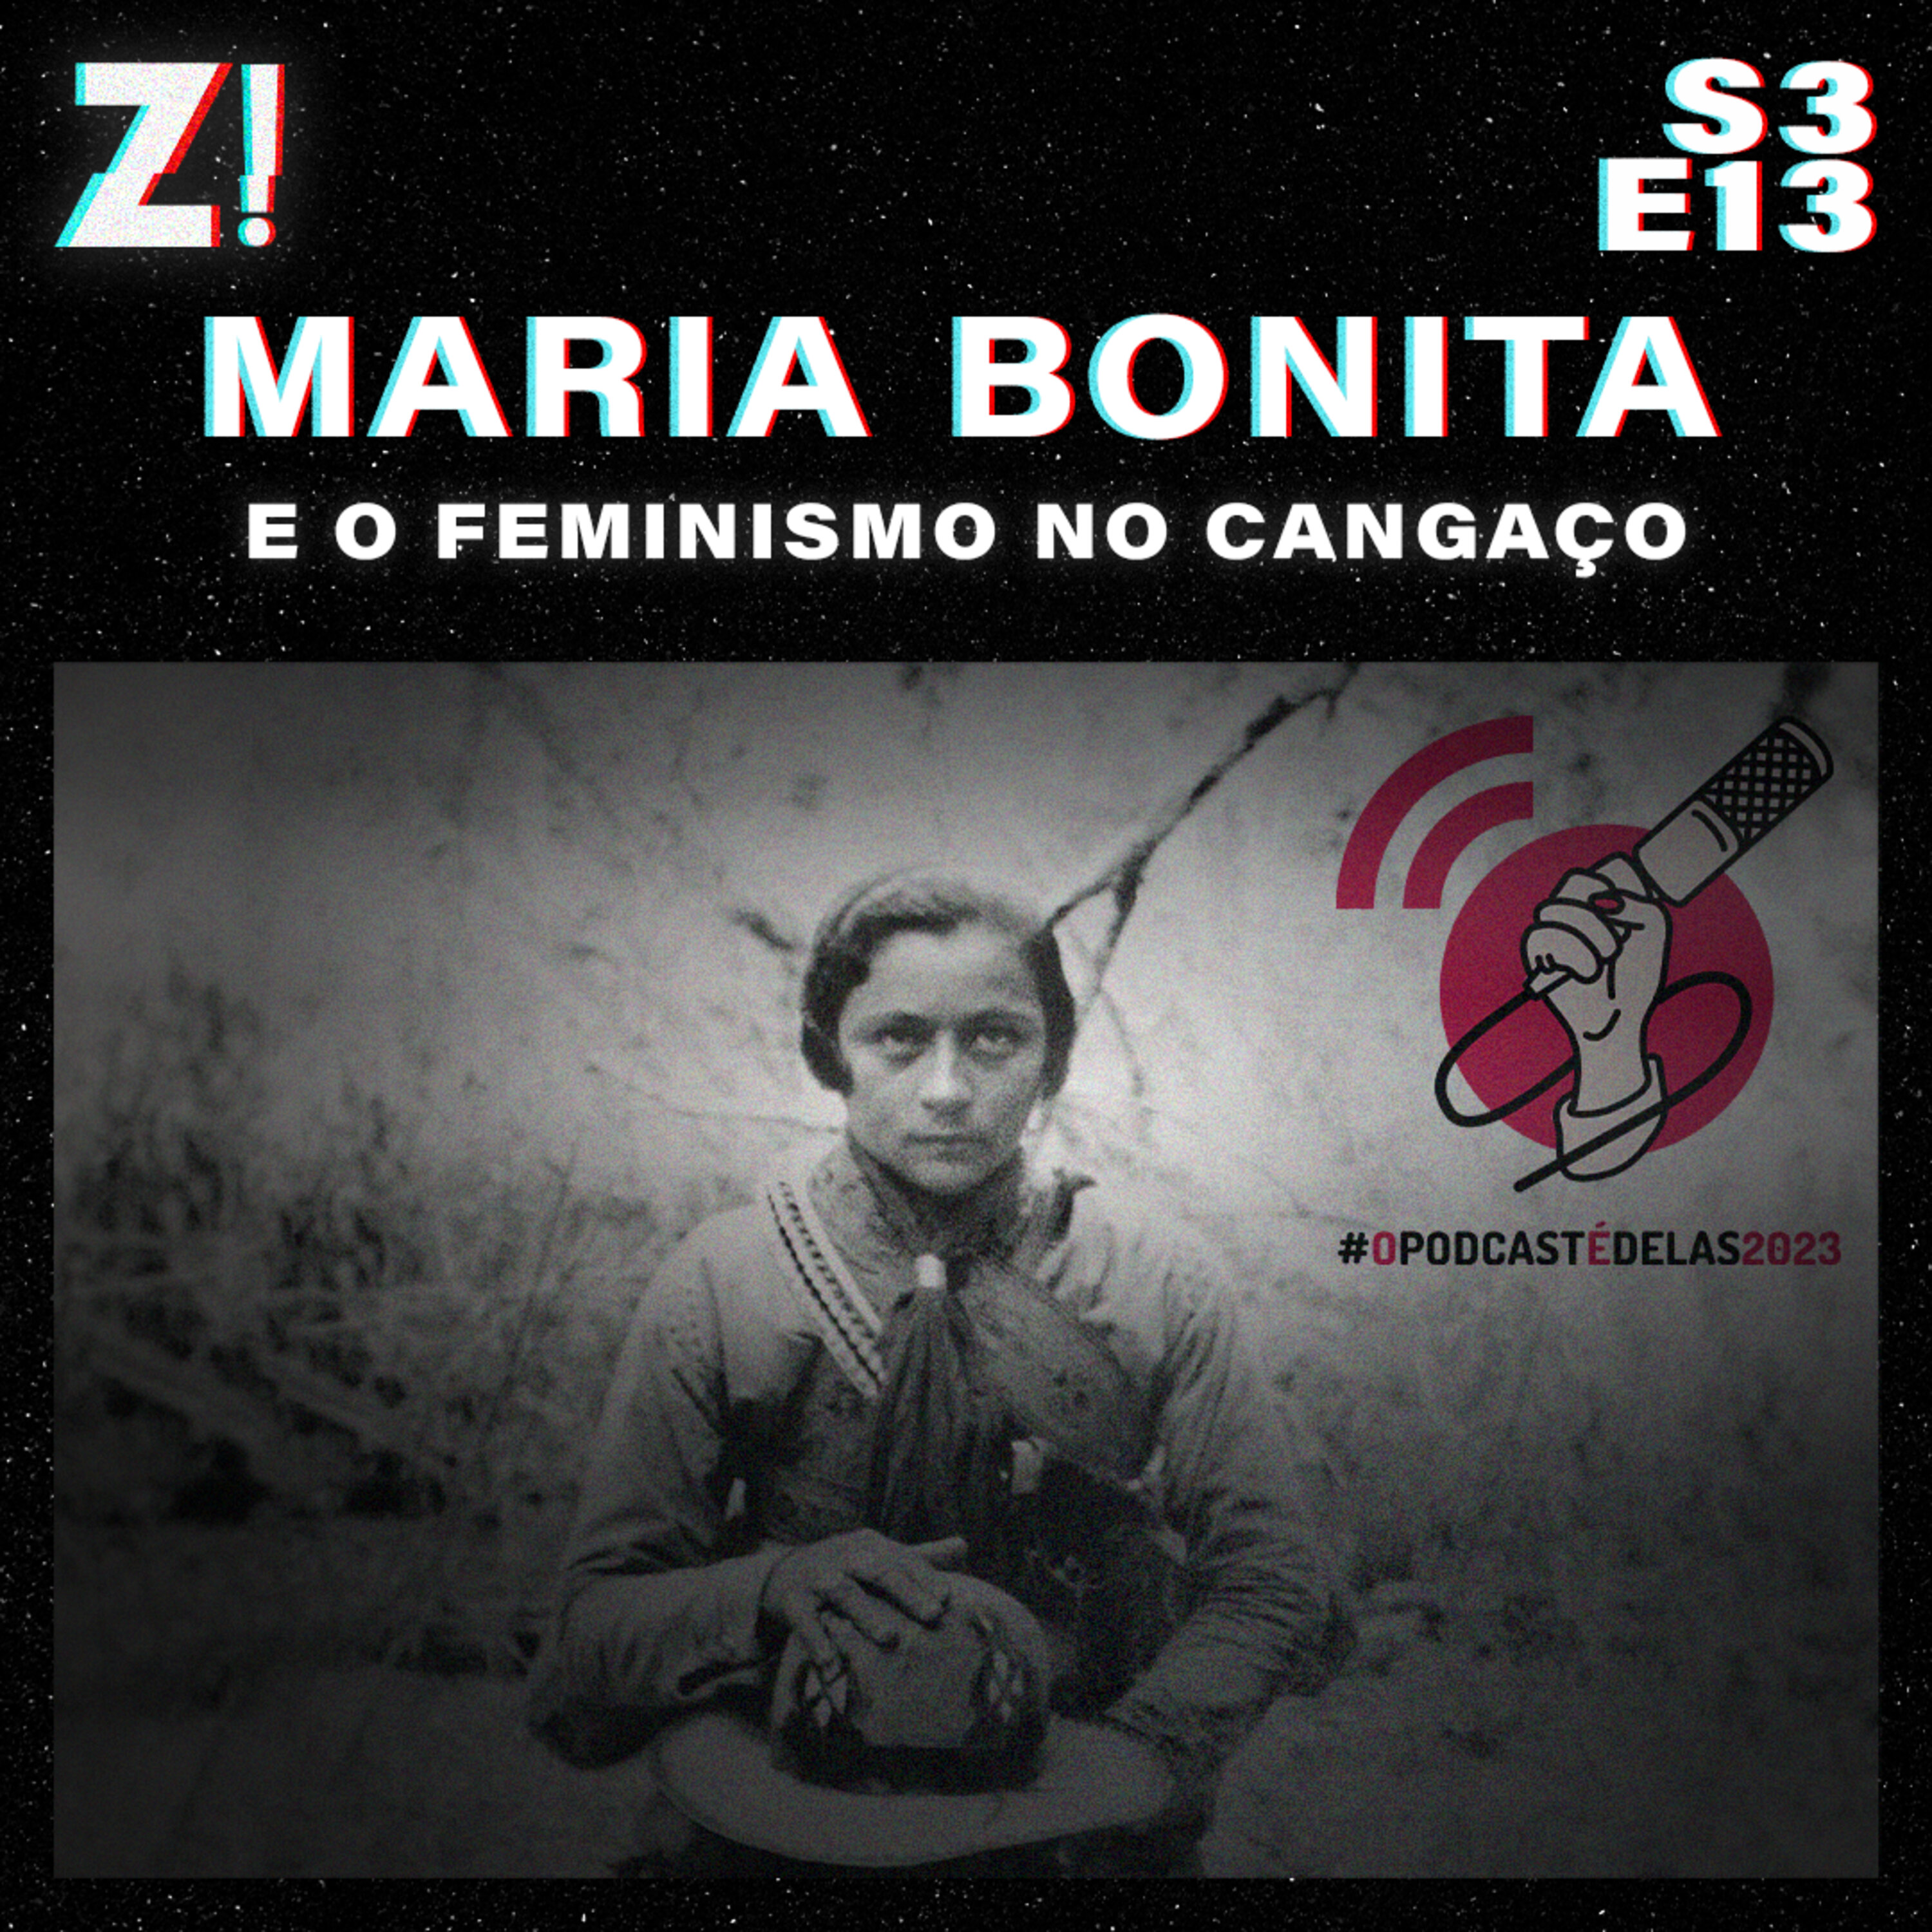 ZiCast S3E13 - Maria Bonita e o Feminismo no Cangaco #OPodcastÉDelas2023